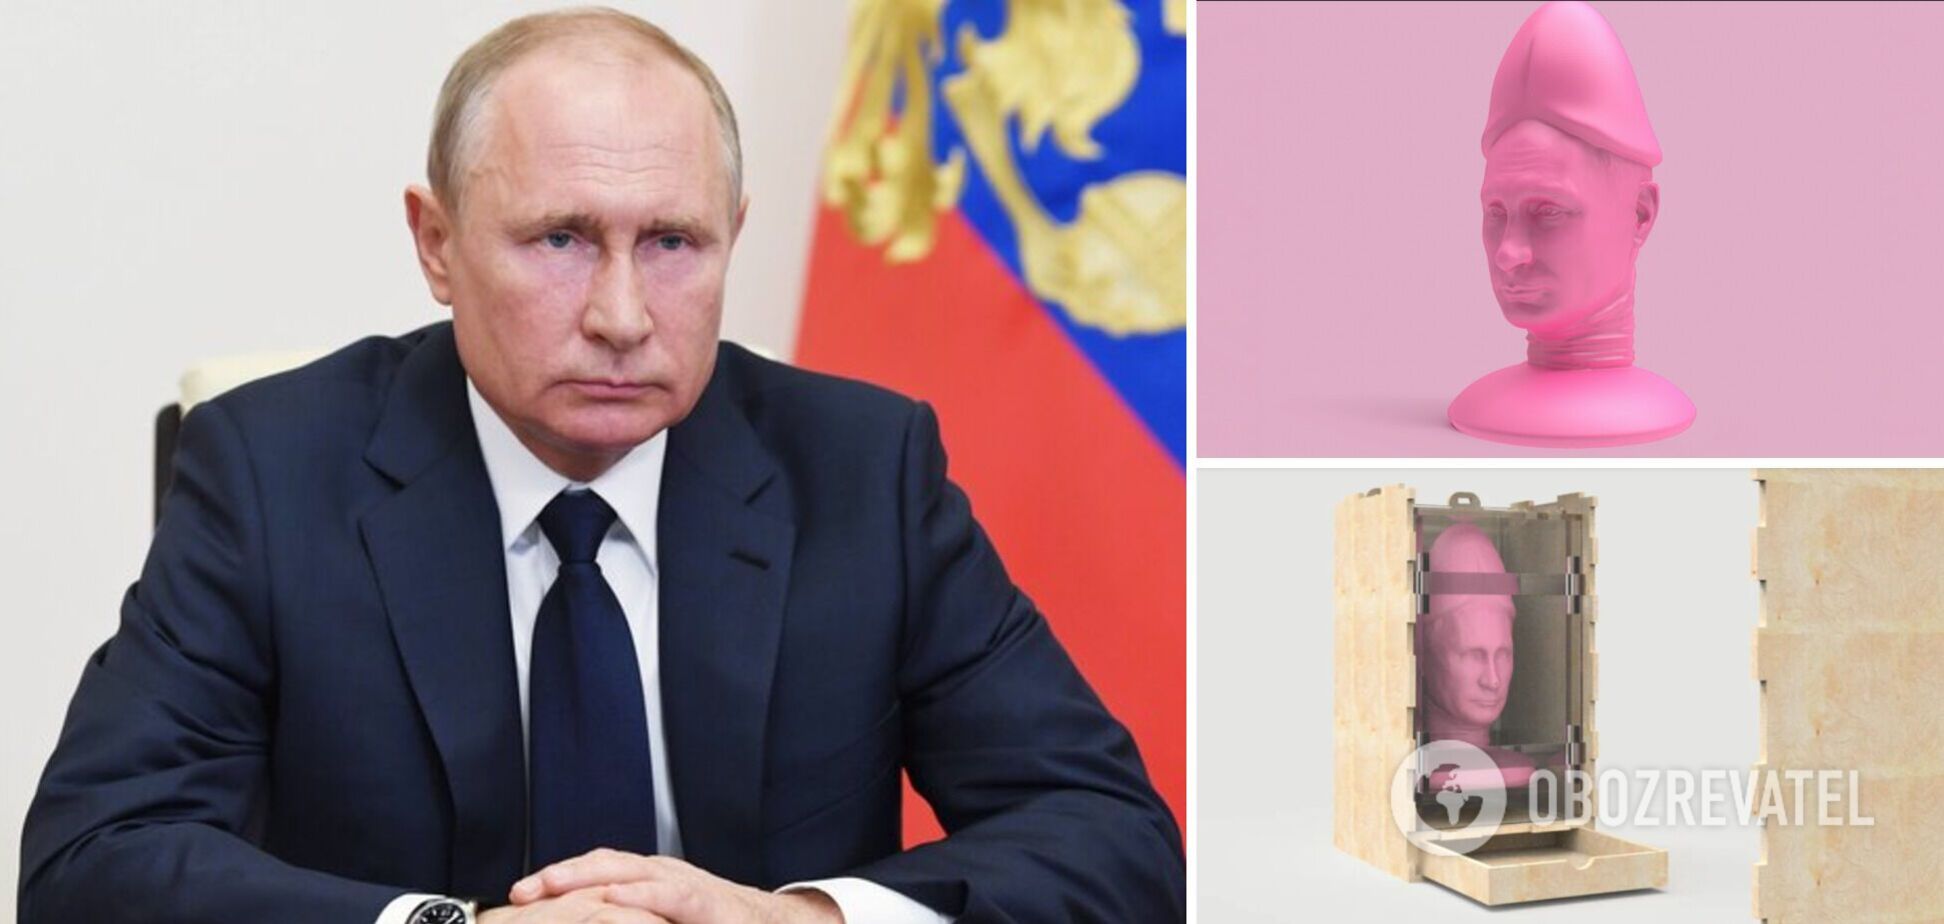 Секс-игрушку с лицом и голосом Путина выставили на аукцион: деньги с продажи пойдут Украине. Фото